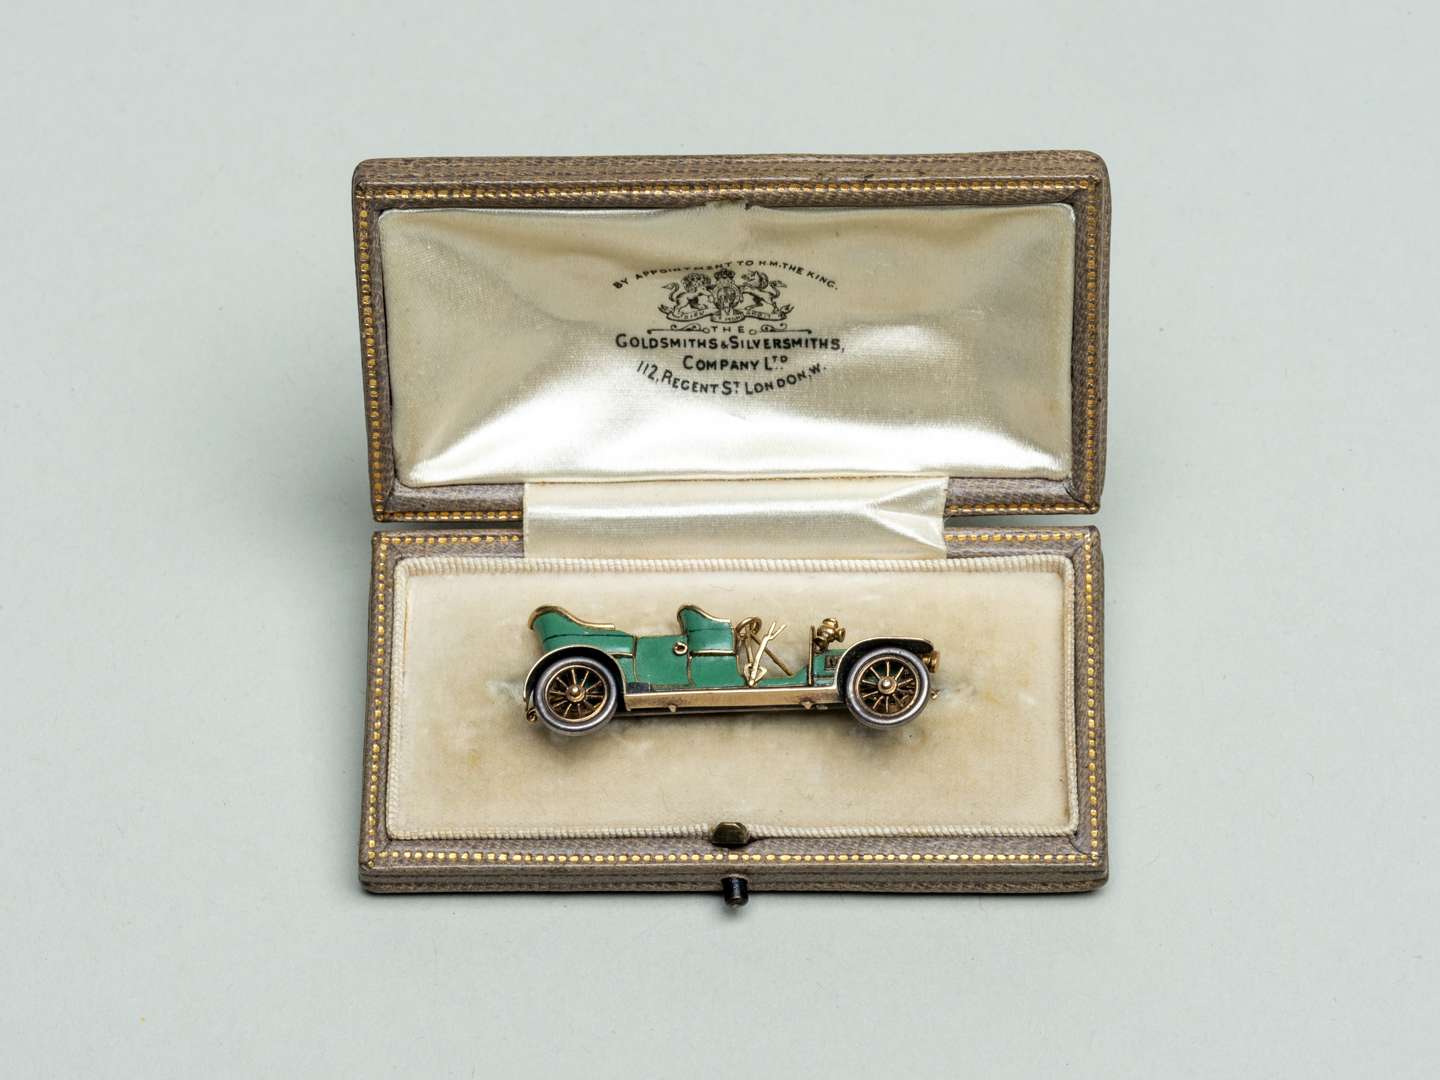 <p>Rolls Royce Silver Ghost landaulette brooch</p>